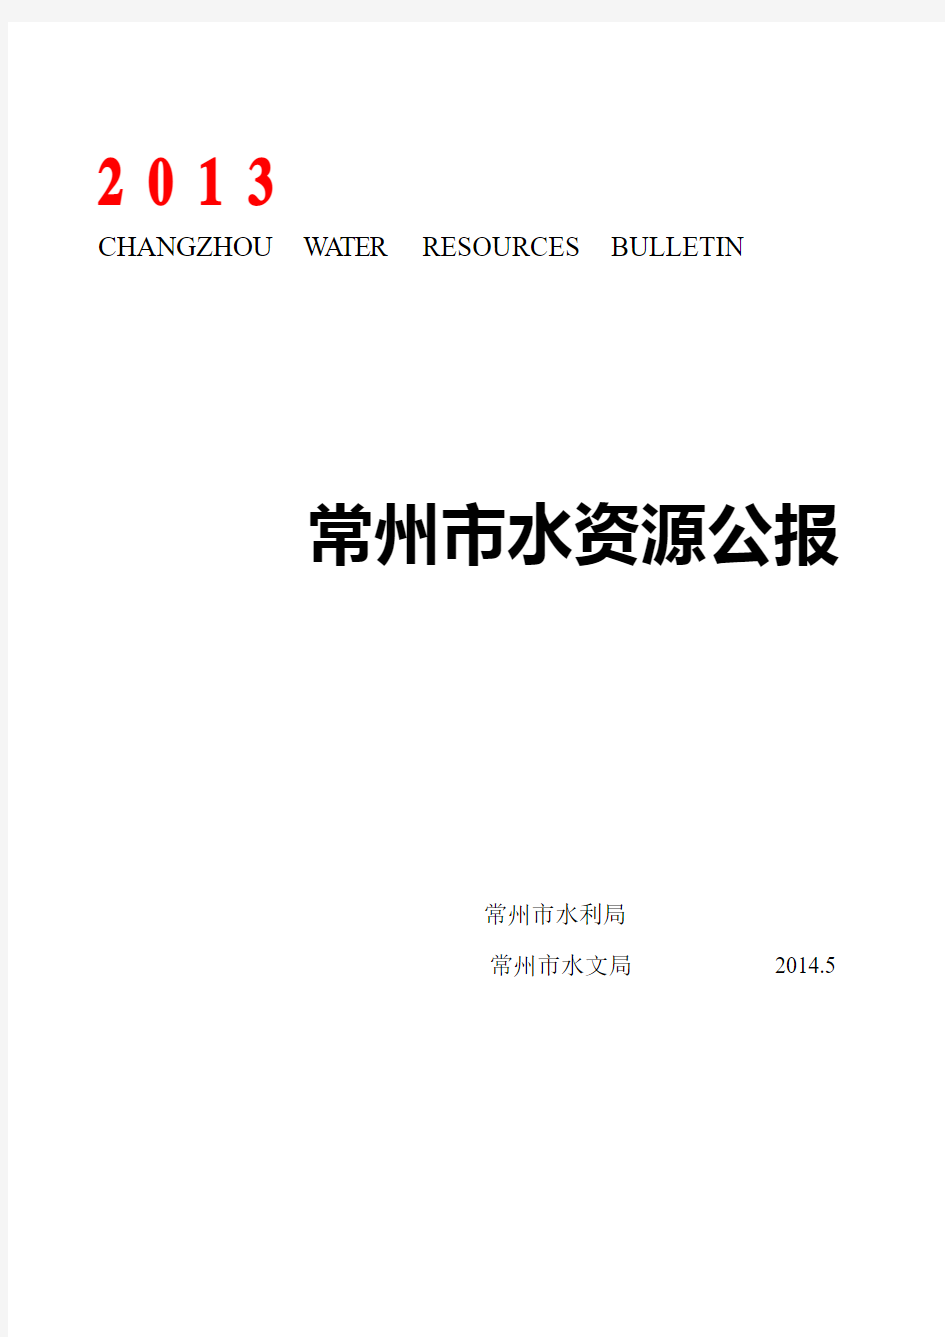 常州市水资源公报-Changzhou